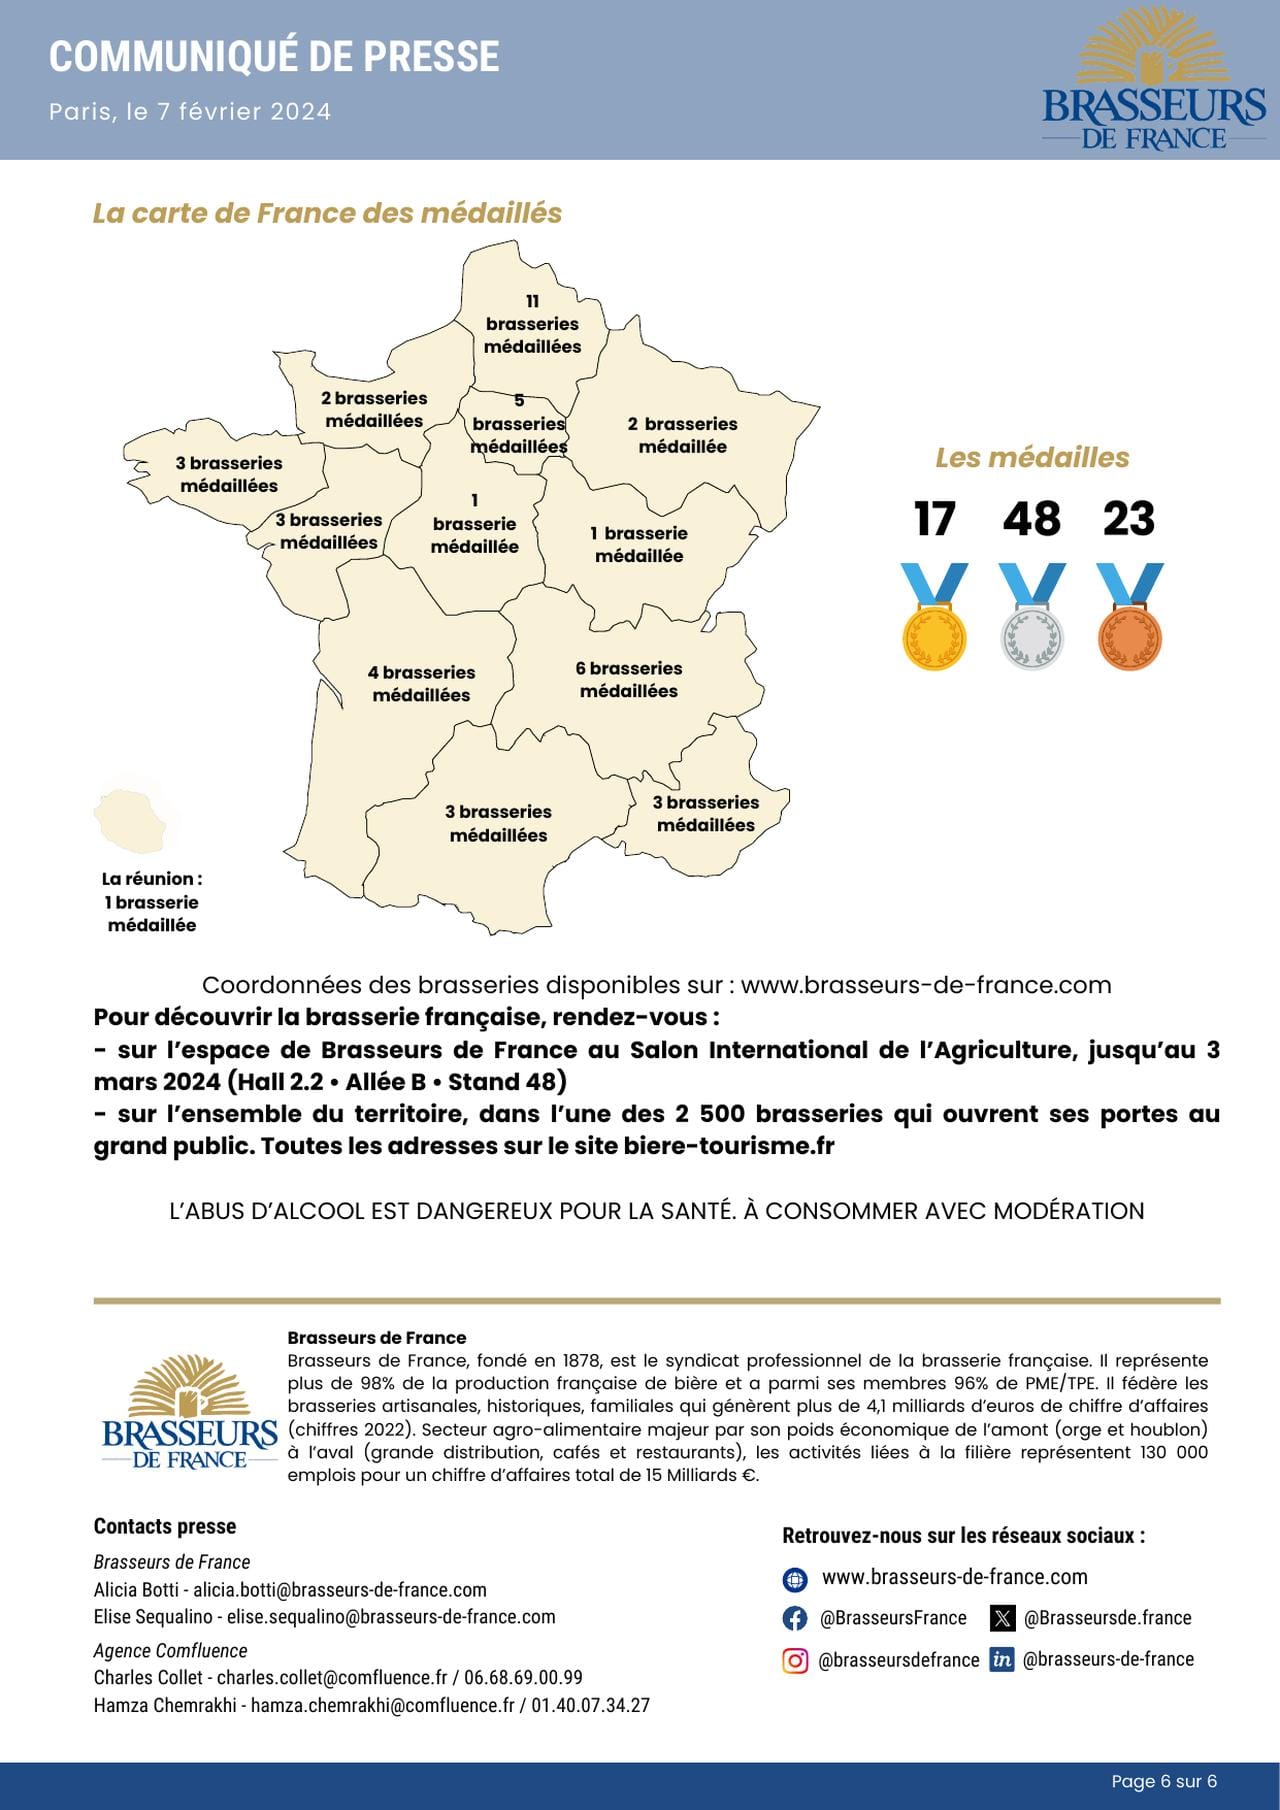 Les adhérents de Brasseurs de France à l’honneur au Concours Général Agricole avec 88 médailles